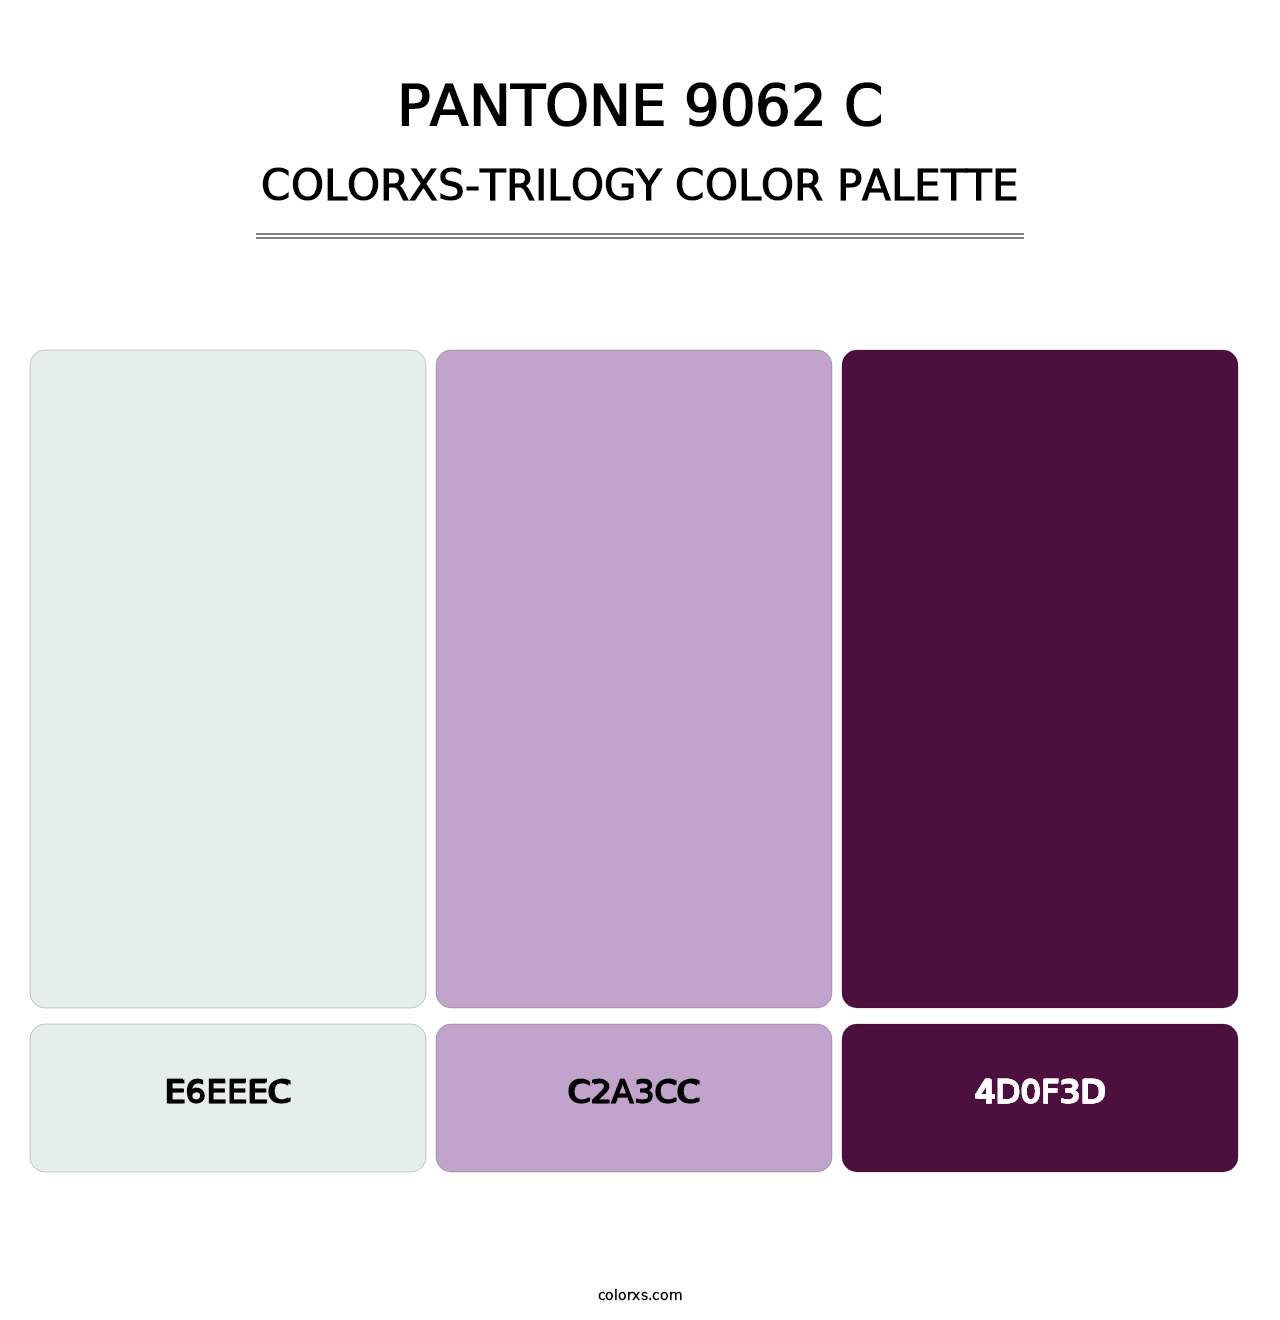 PANTONE 9062 C - Colorxs Trilogy Palette